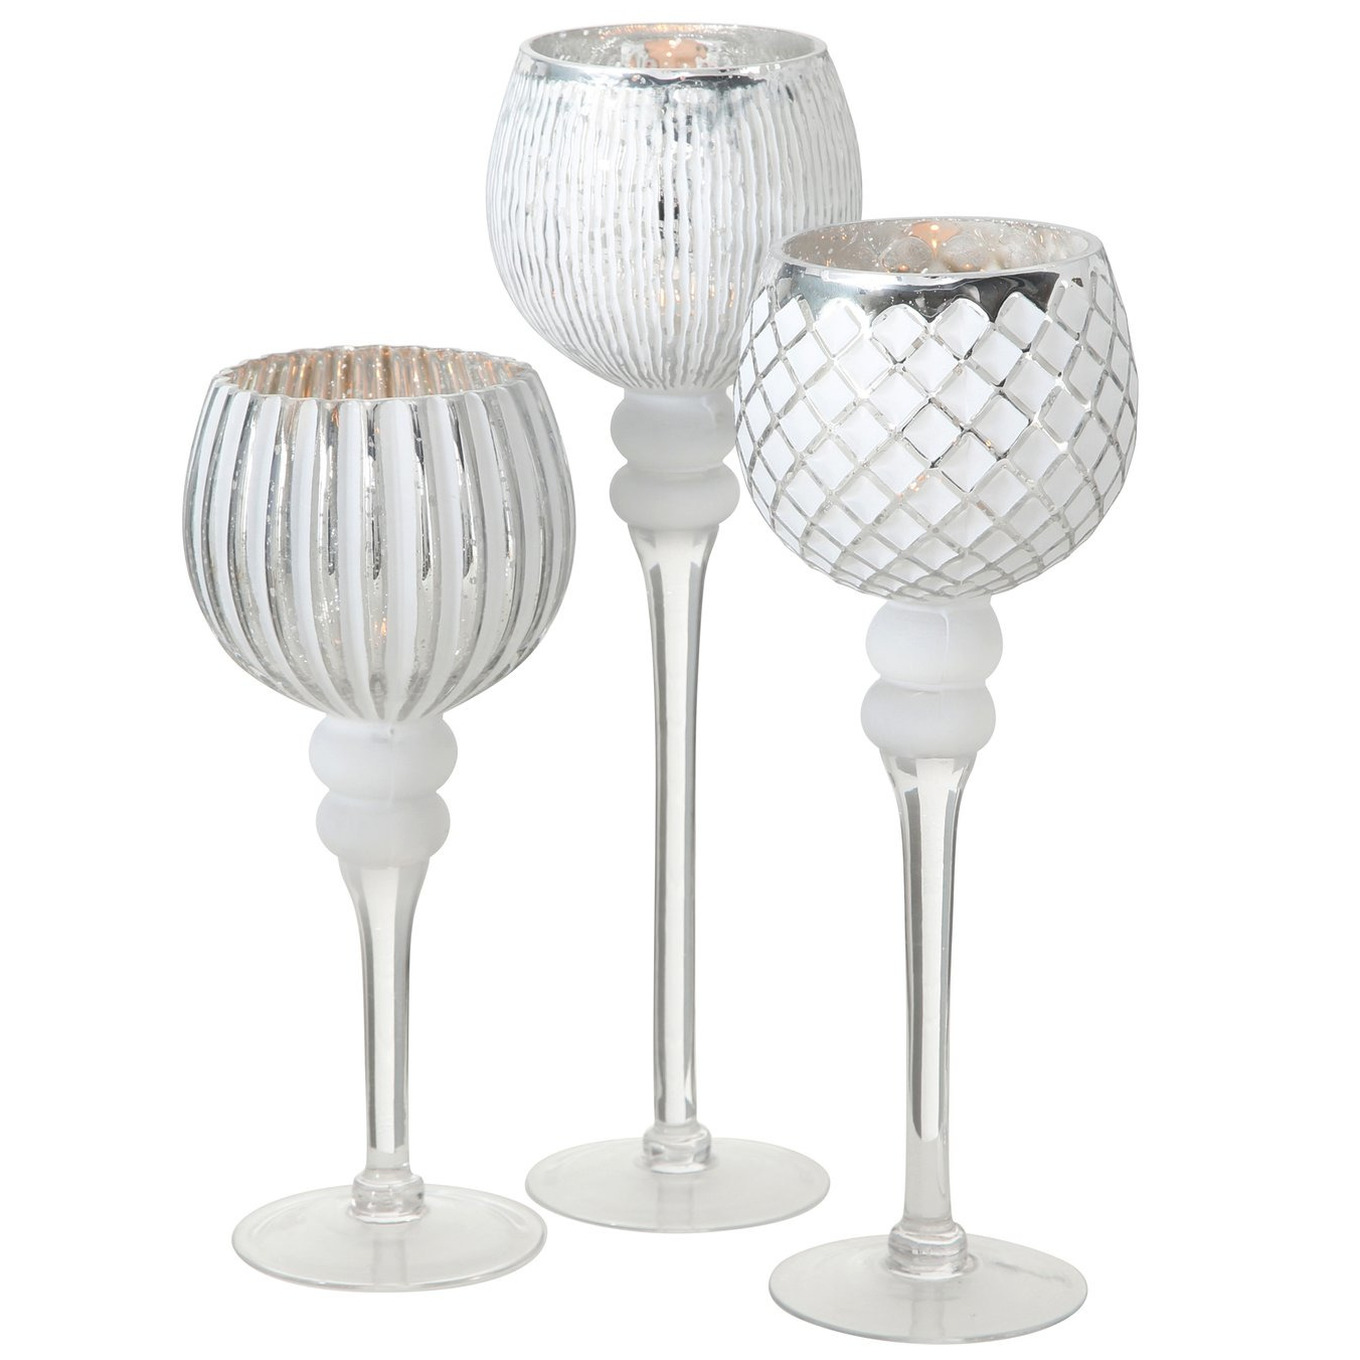 Luxe glazen design kaarsenhouders-windlichten set van 3x stuks zilver-wit transparant 30-40 cm